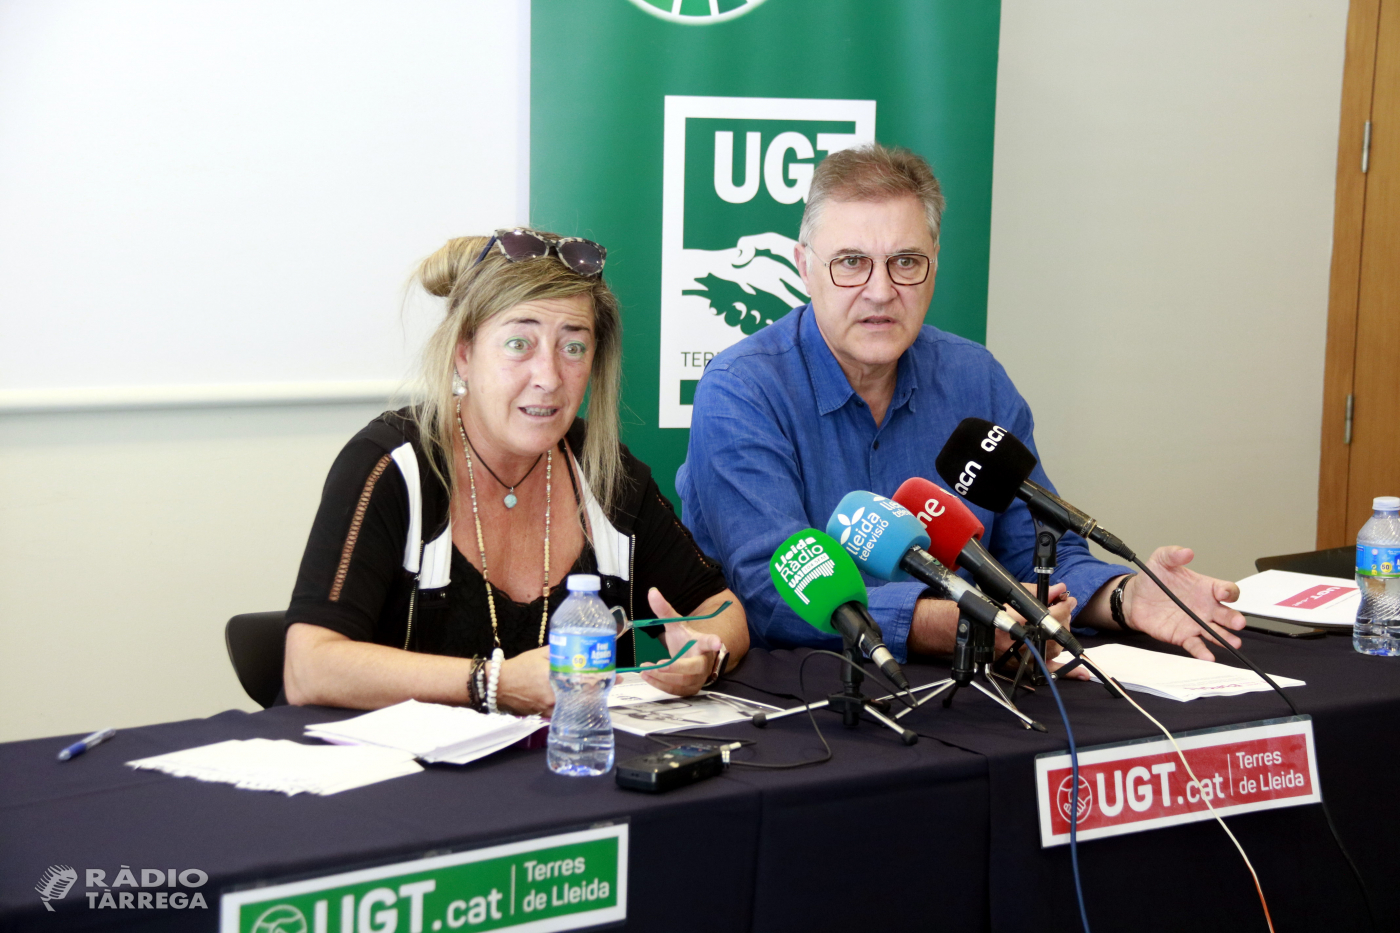 UGT denuncia el "col·lapse" de l'atenció primària i l'augment de les llistes d'espera a la demarcació de Lleida